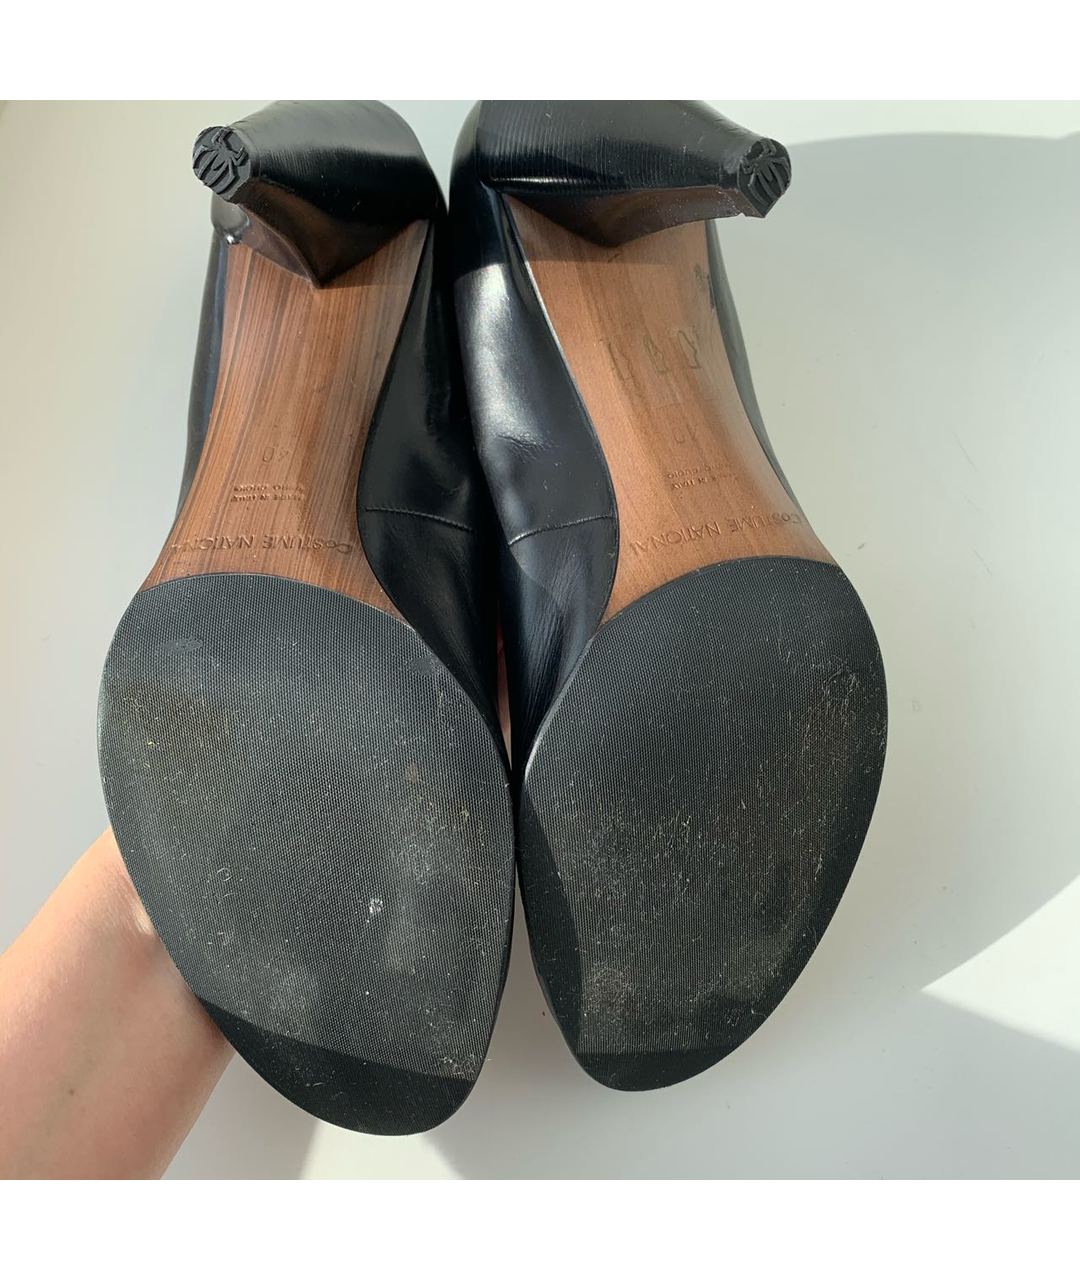 COSTUME NATIONAL Черные кожаные туфли, фото 2